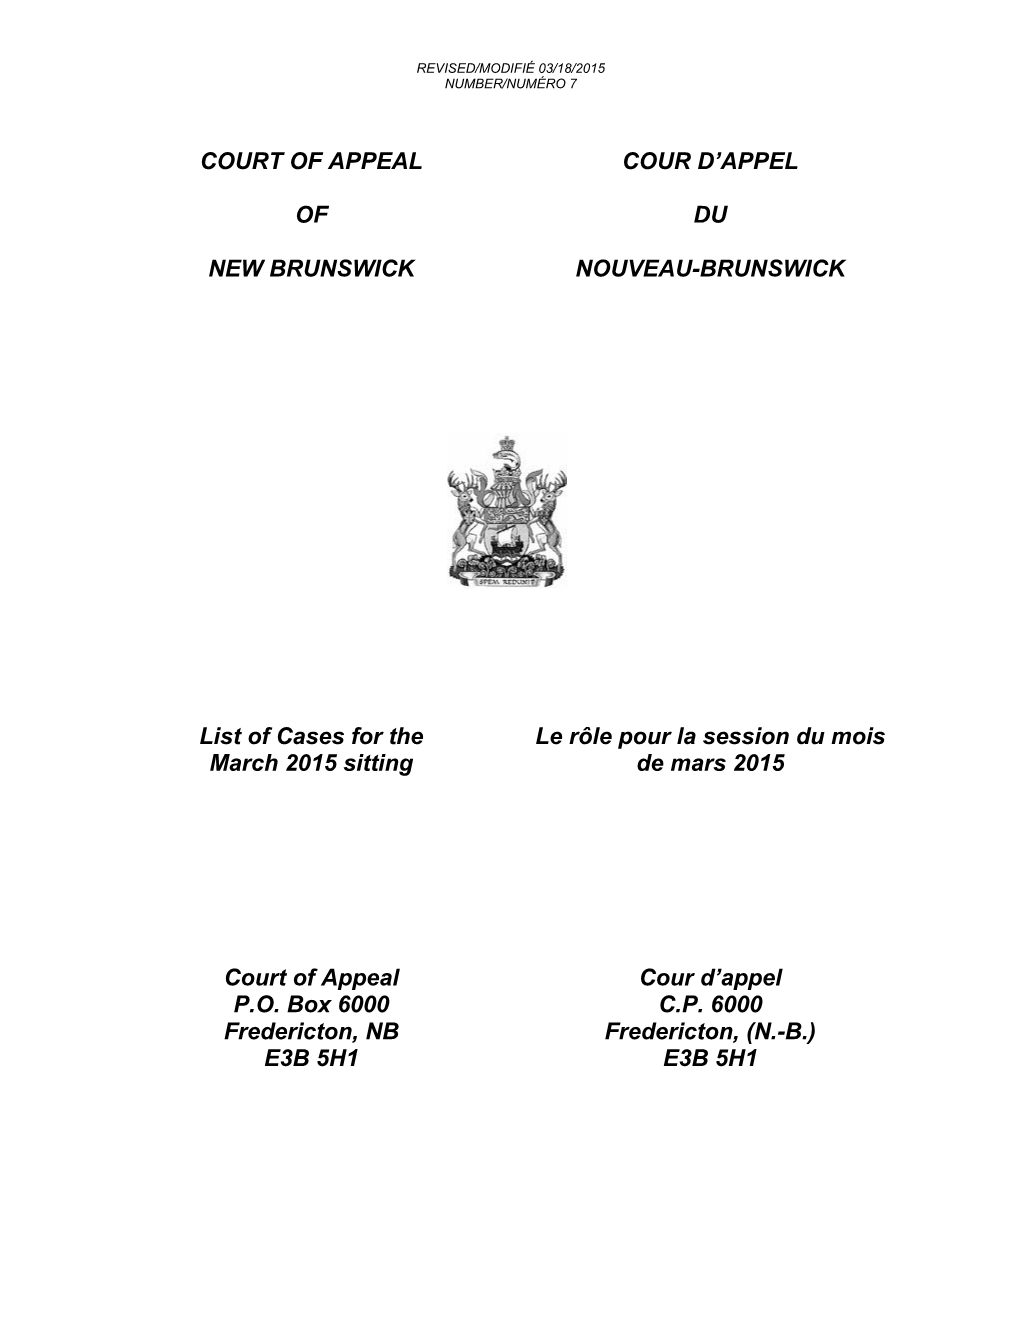 Court of Appeal of New Brunswick / Cour D'appel Du Nouveau-Brunswick